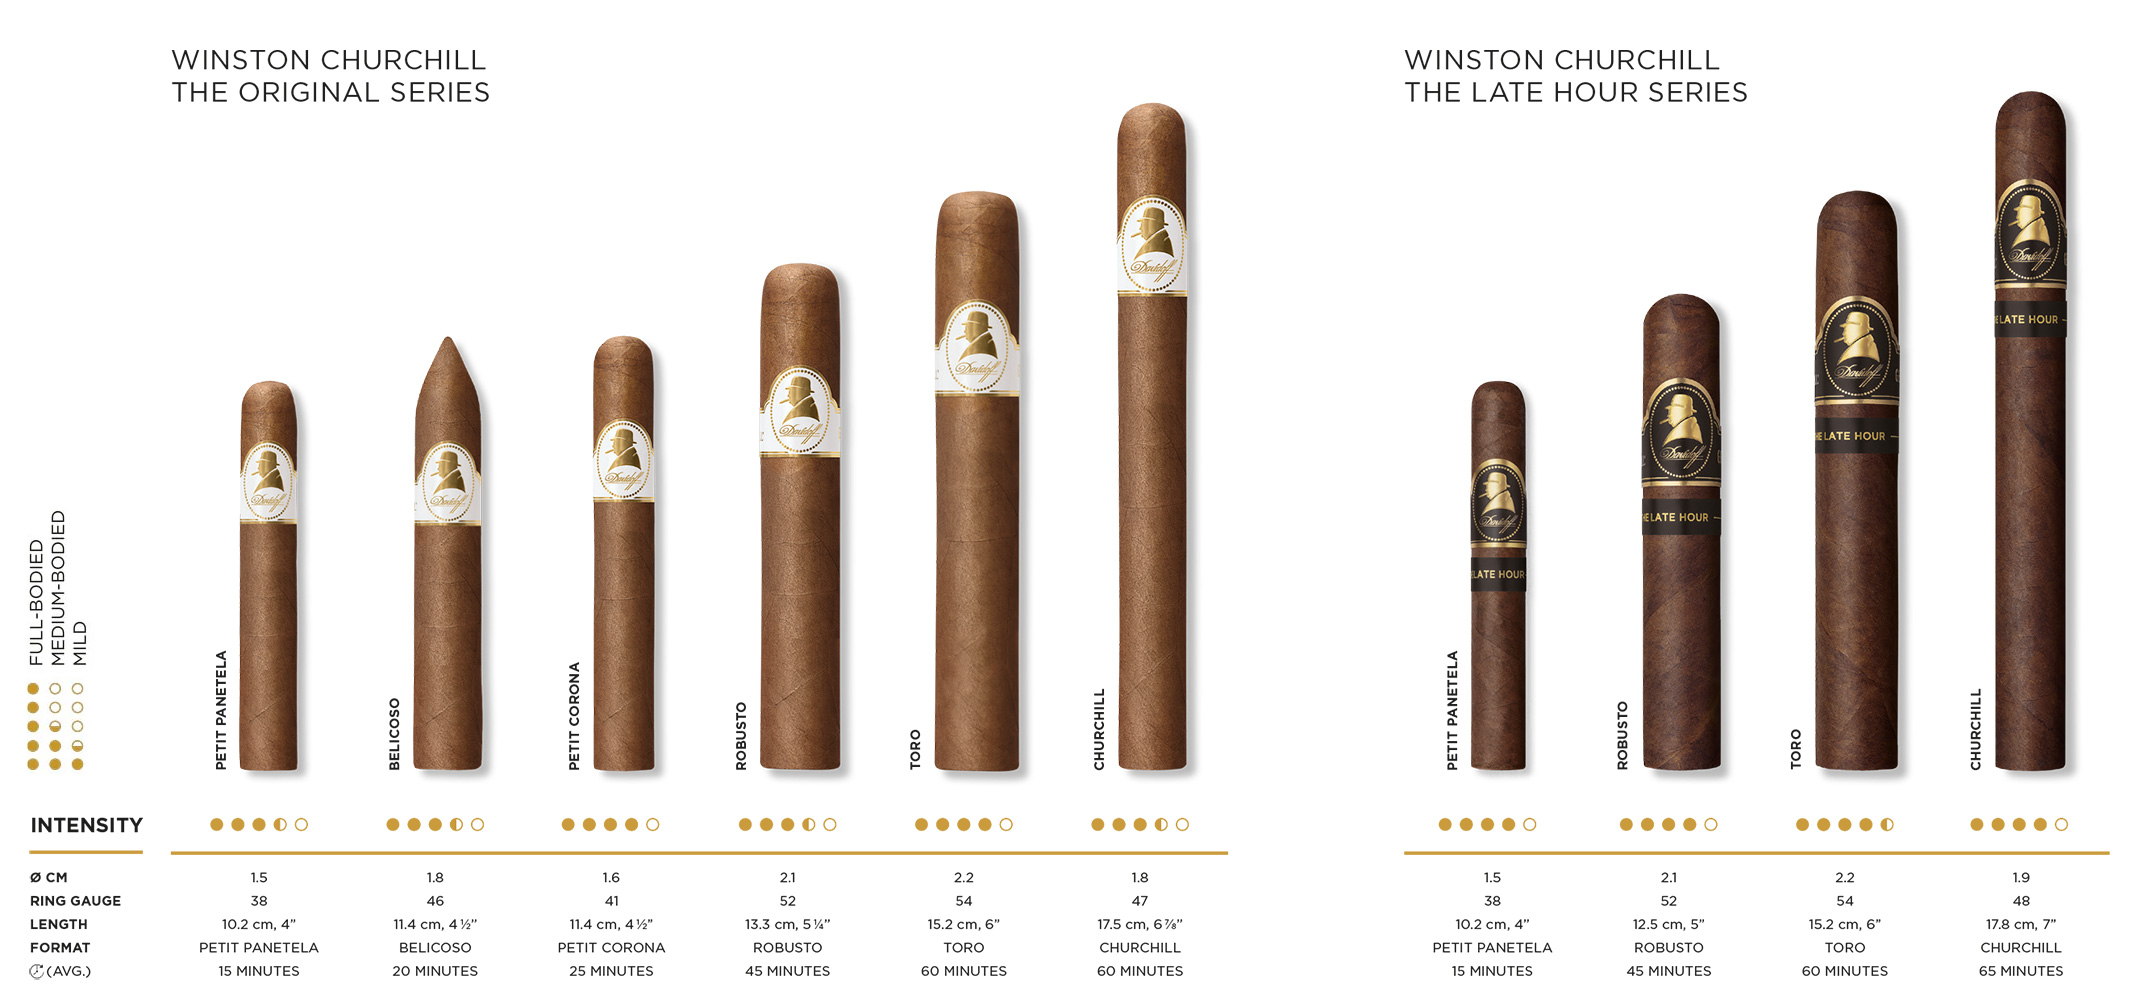 Die Davidoff Winston Churchill «The Original Series» and «The Late Hour Series» Zigarren im Vergleich. Alle Formate werden im Detail erklärt in Bezug auf Ringmass, Intensität, Länge, Format und Genusszeit.